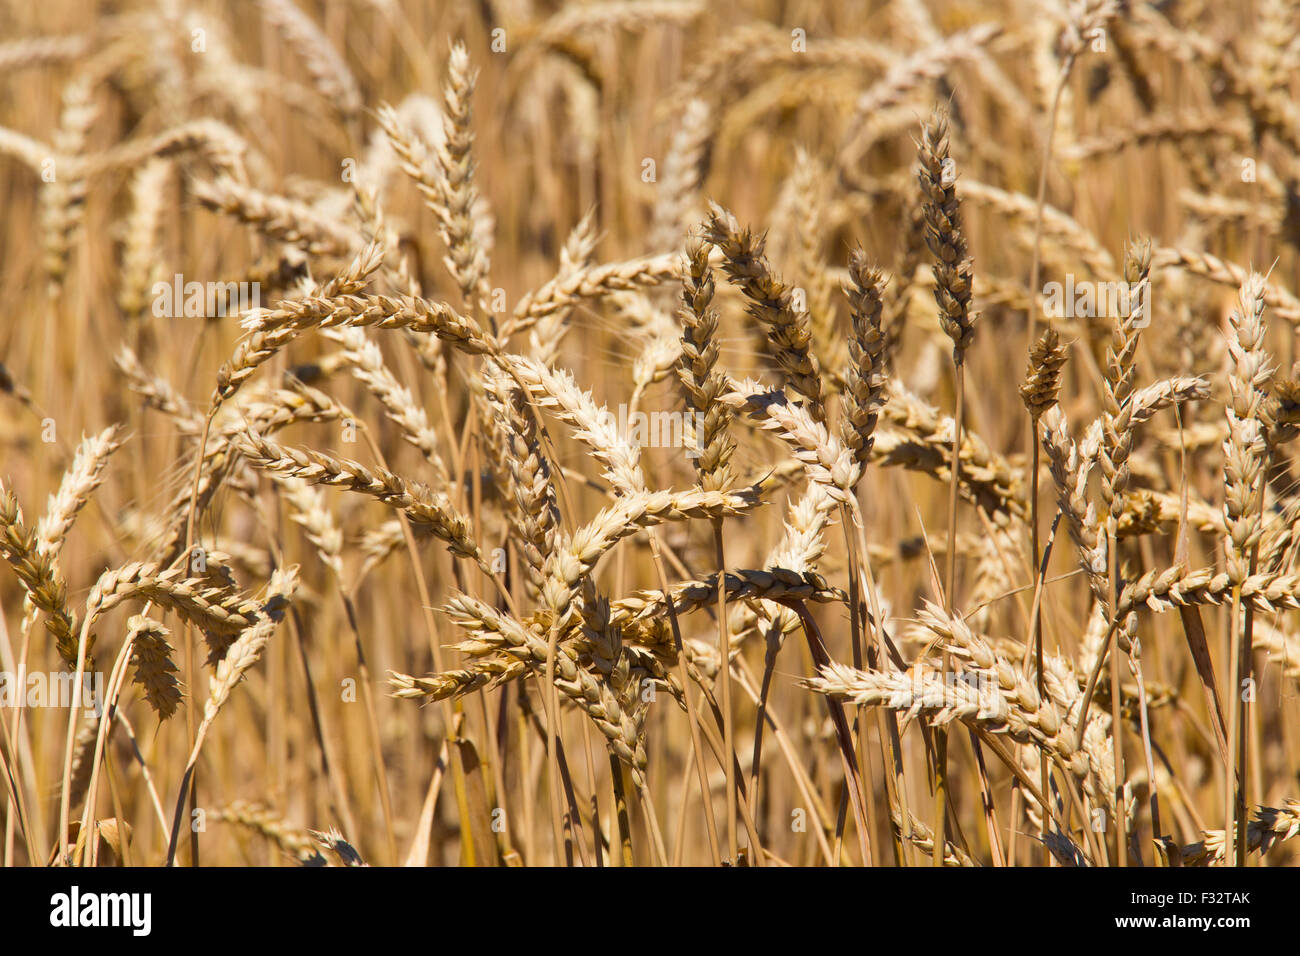 Moreland, Idaho - Idaho wheat field. Stock Photo